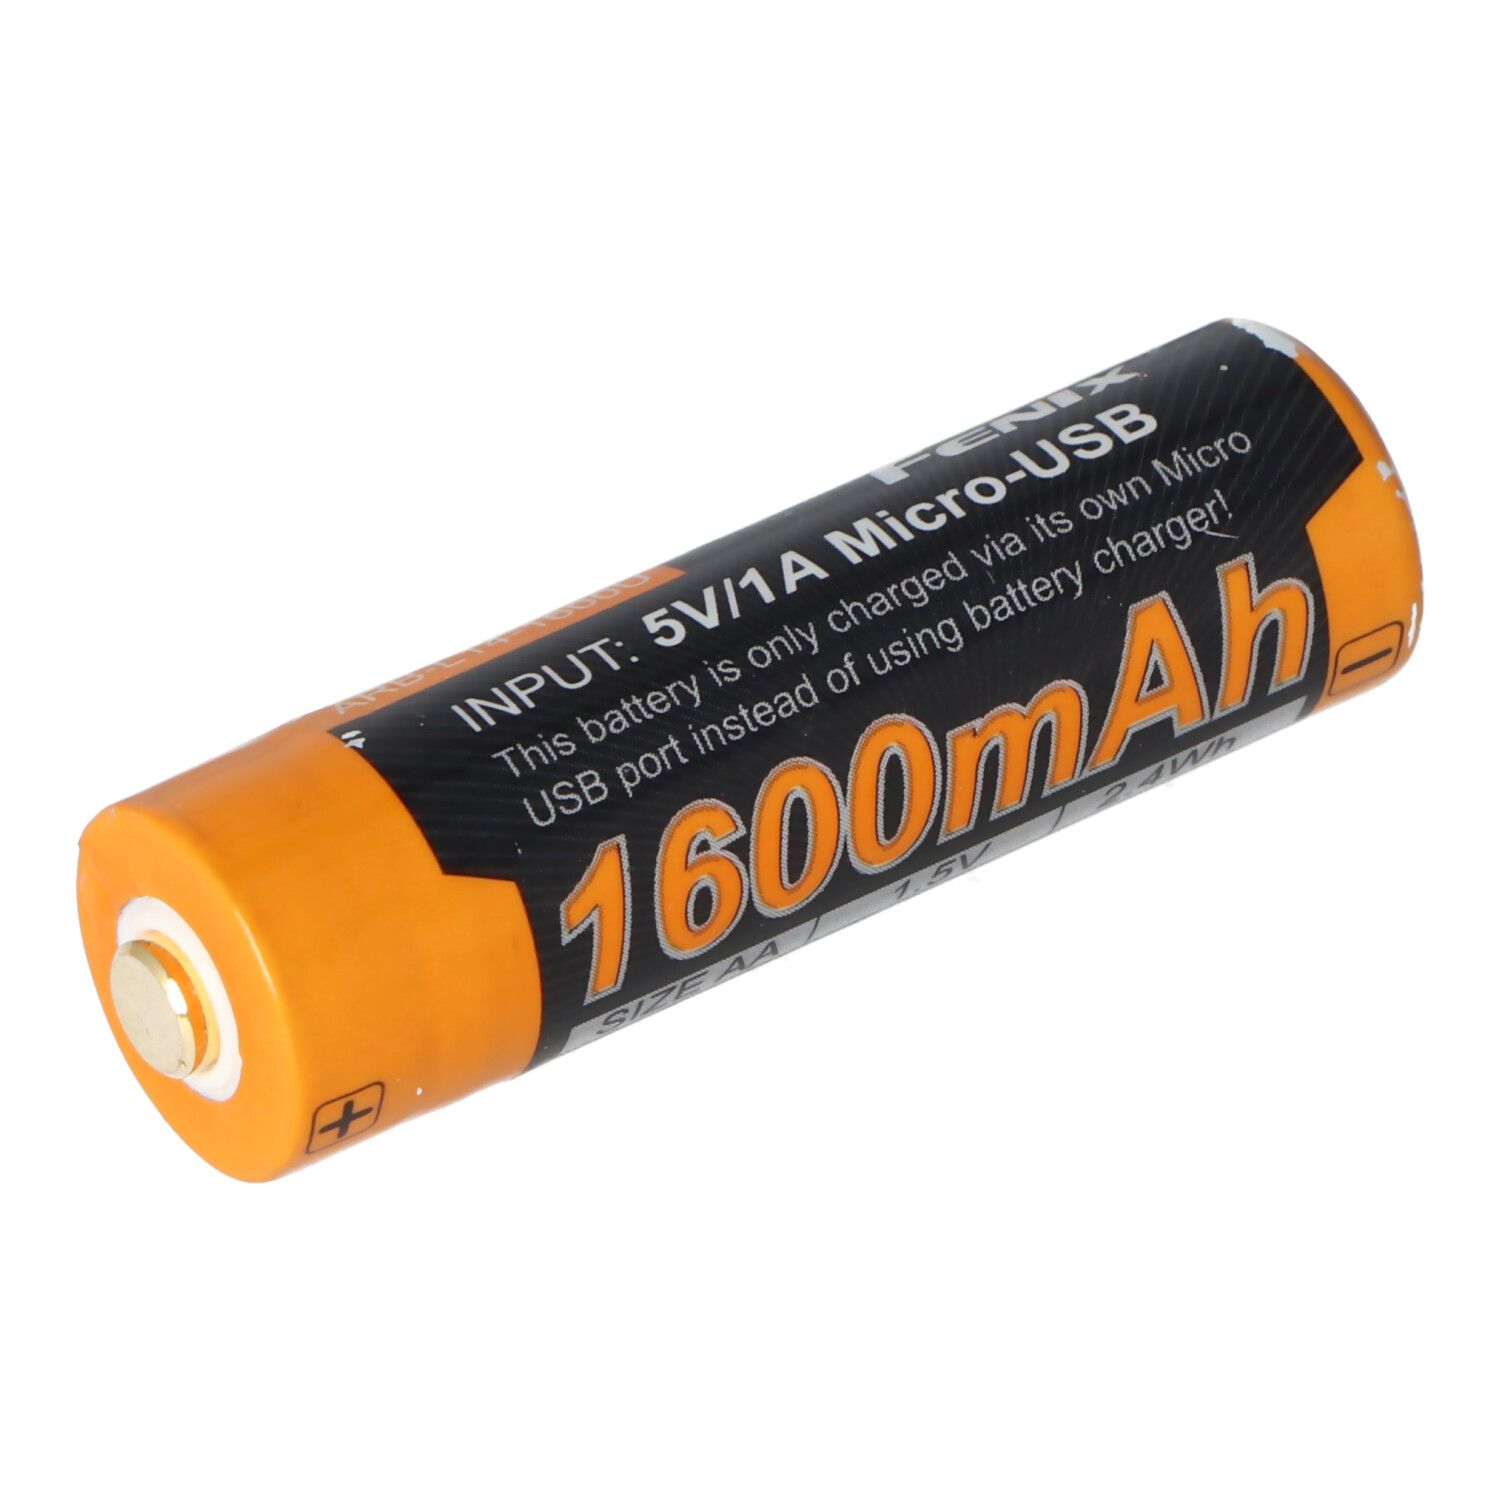 kapitalisme Standaard Inloggegevens Li-ion oplaadbare batterij Mignon AA LR6 1600 mAh met 1,5 volt  multi-beschermd met USB-oplaadfunctie, AccuSafe 1 stuk |  Ready2use-batterijen | Batterij op maat | Accumulator | Akku-Shop Nederland